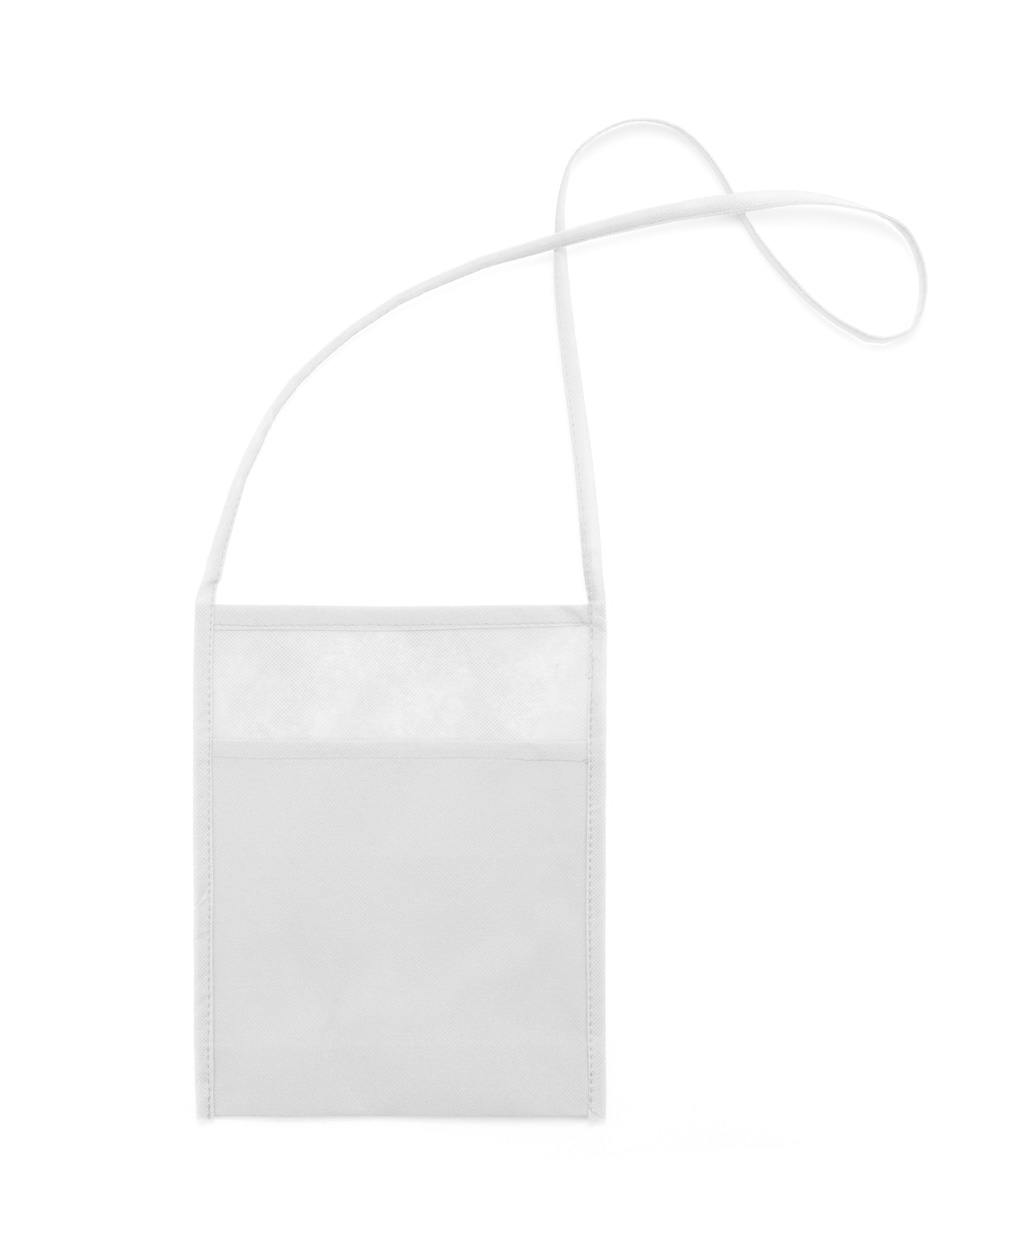 Multipurpose bag YOBOK